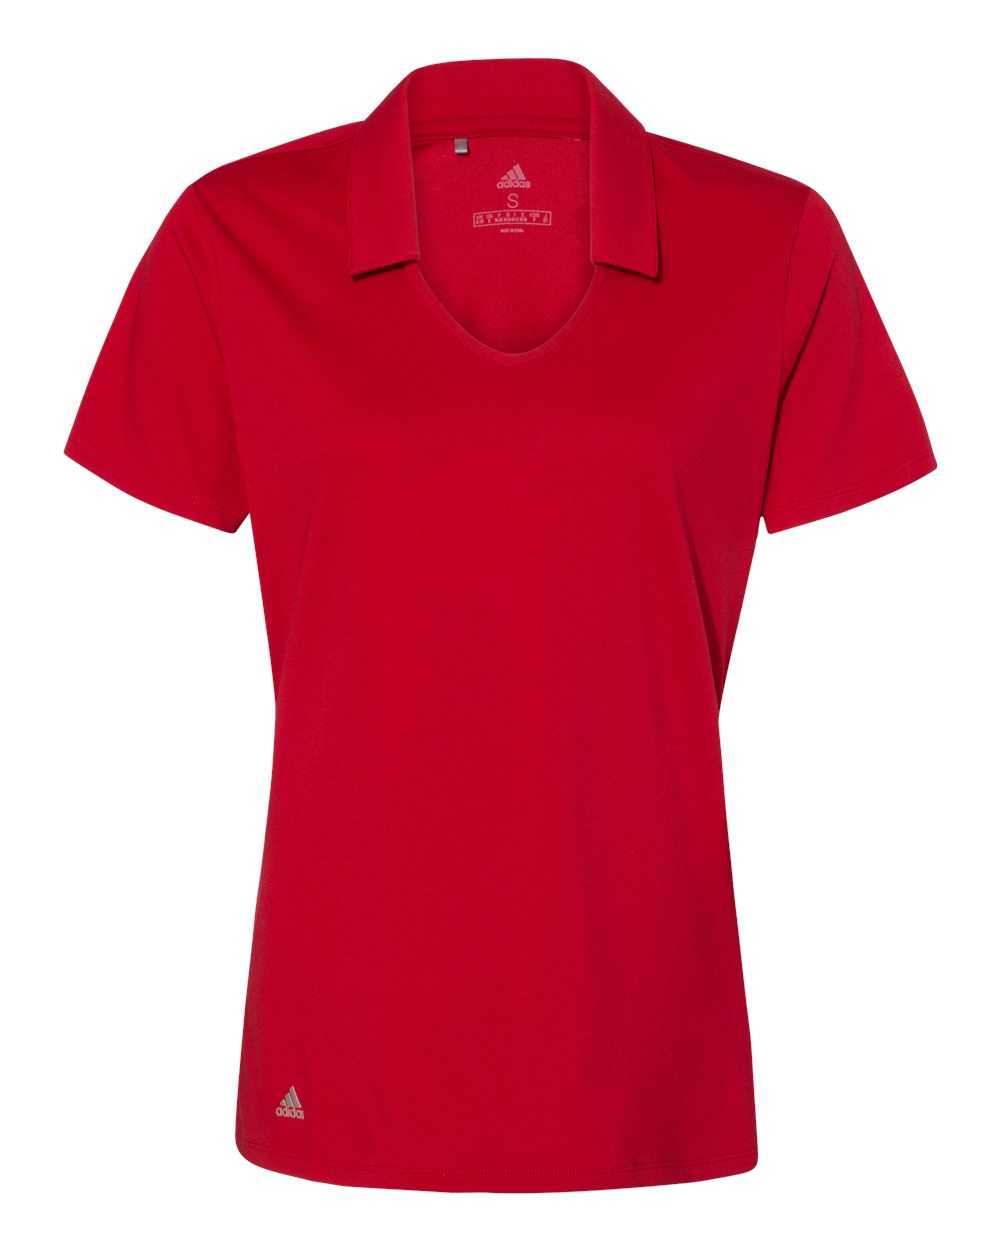 Adidas A323 Women's Cotton Blend Sport Shirt - Power Red - HIT a Double